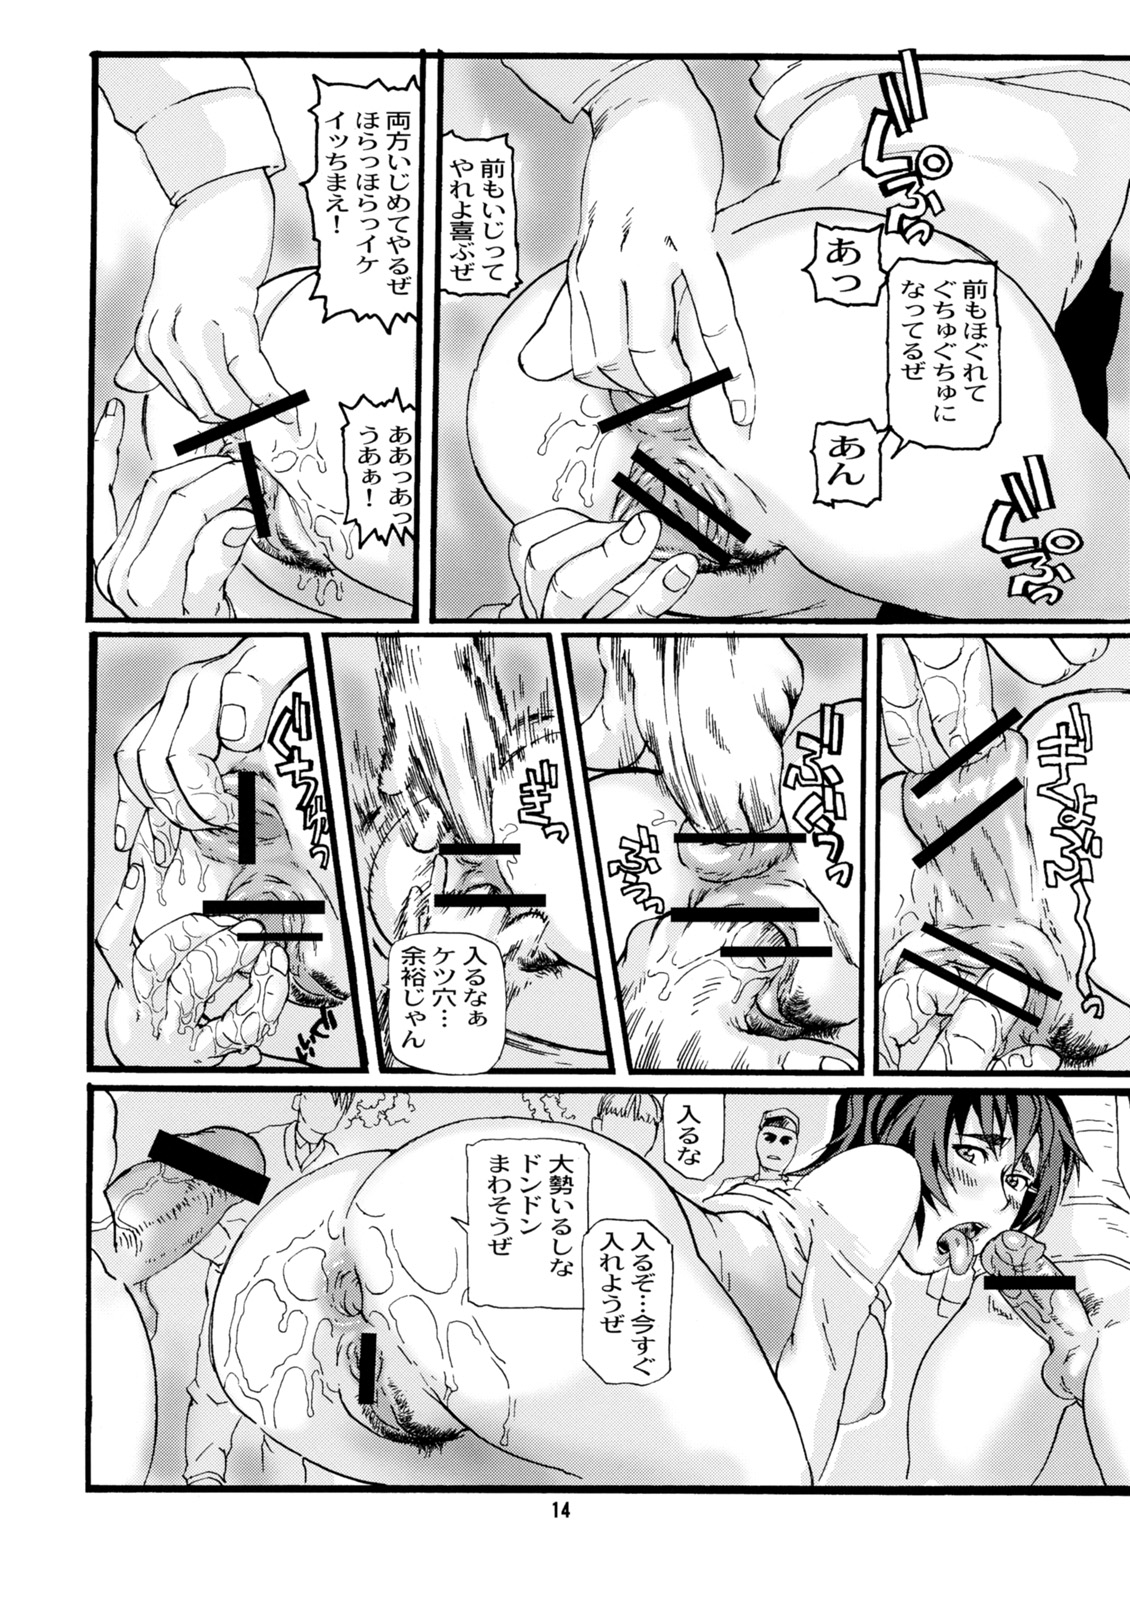 [Tsurugashima Heights (Hase Tsubura)] Uno Matsuri WB (WitchBlade) page 13 full